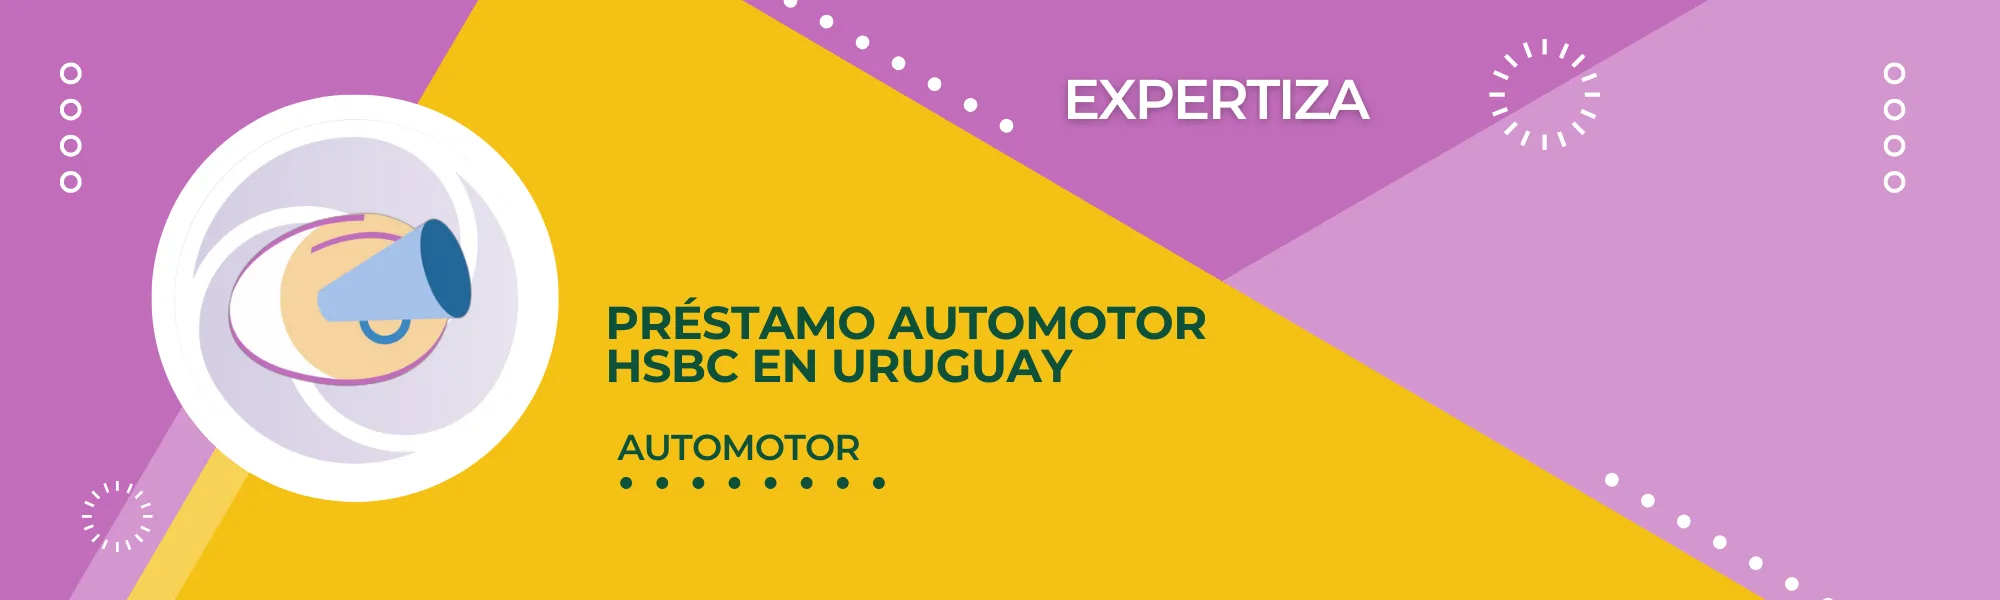 Préstamo automotor HSBC en Uruguay.